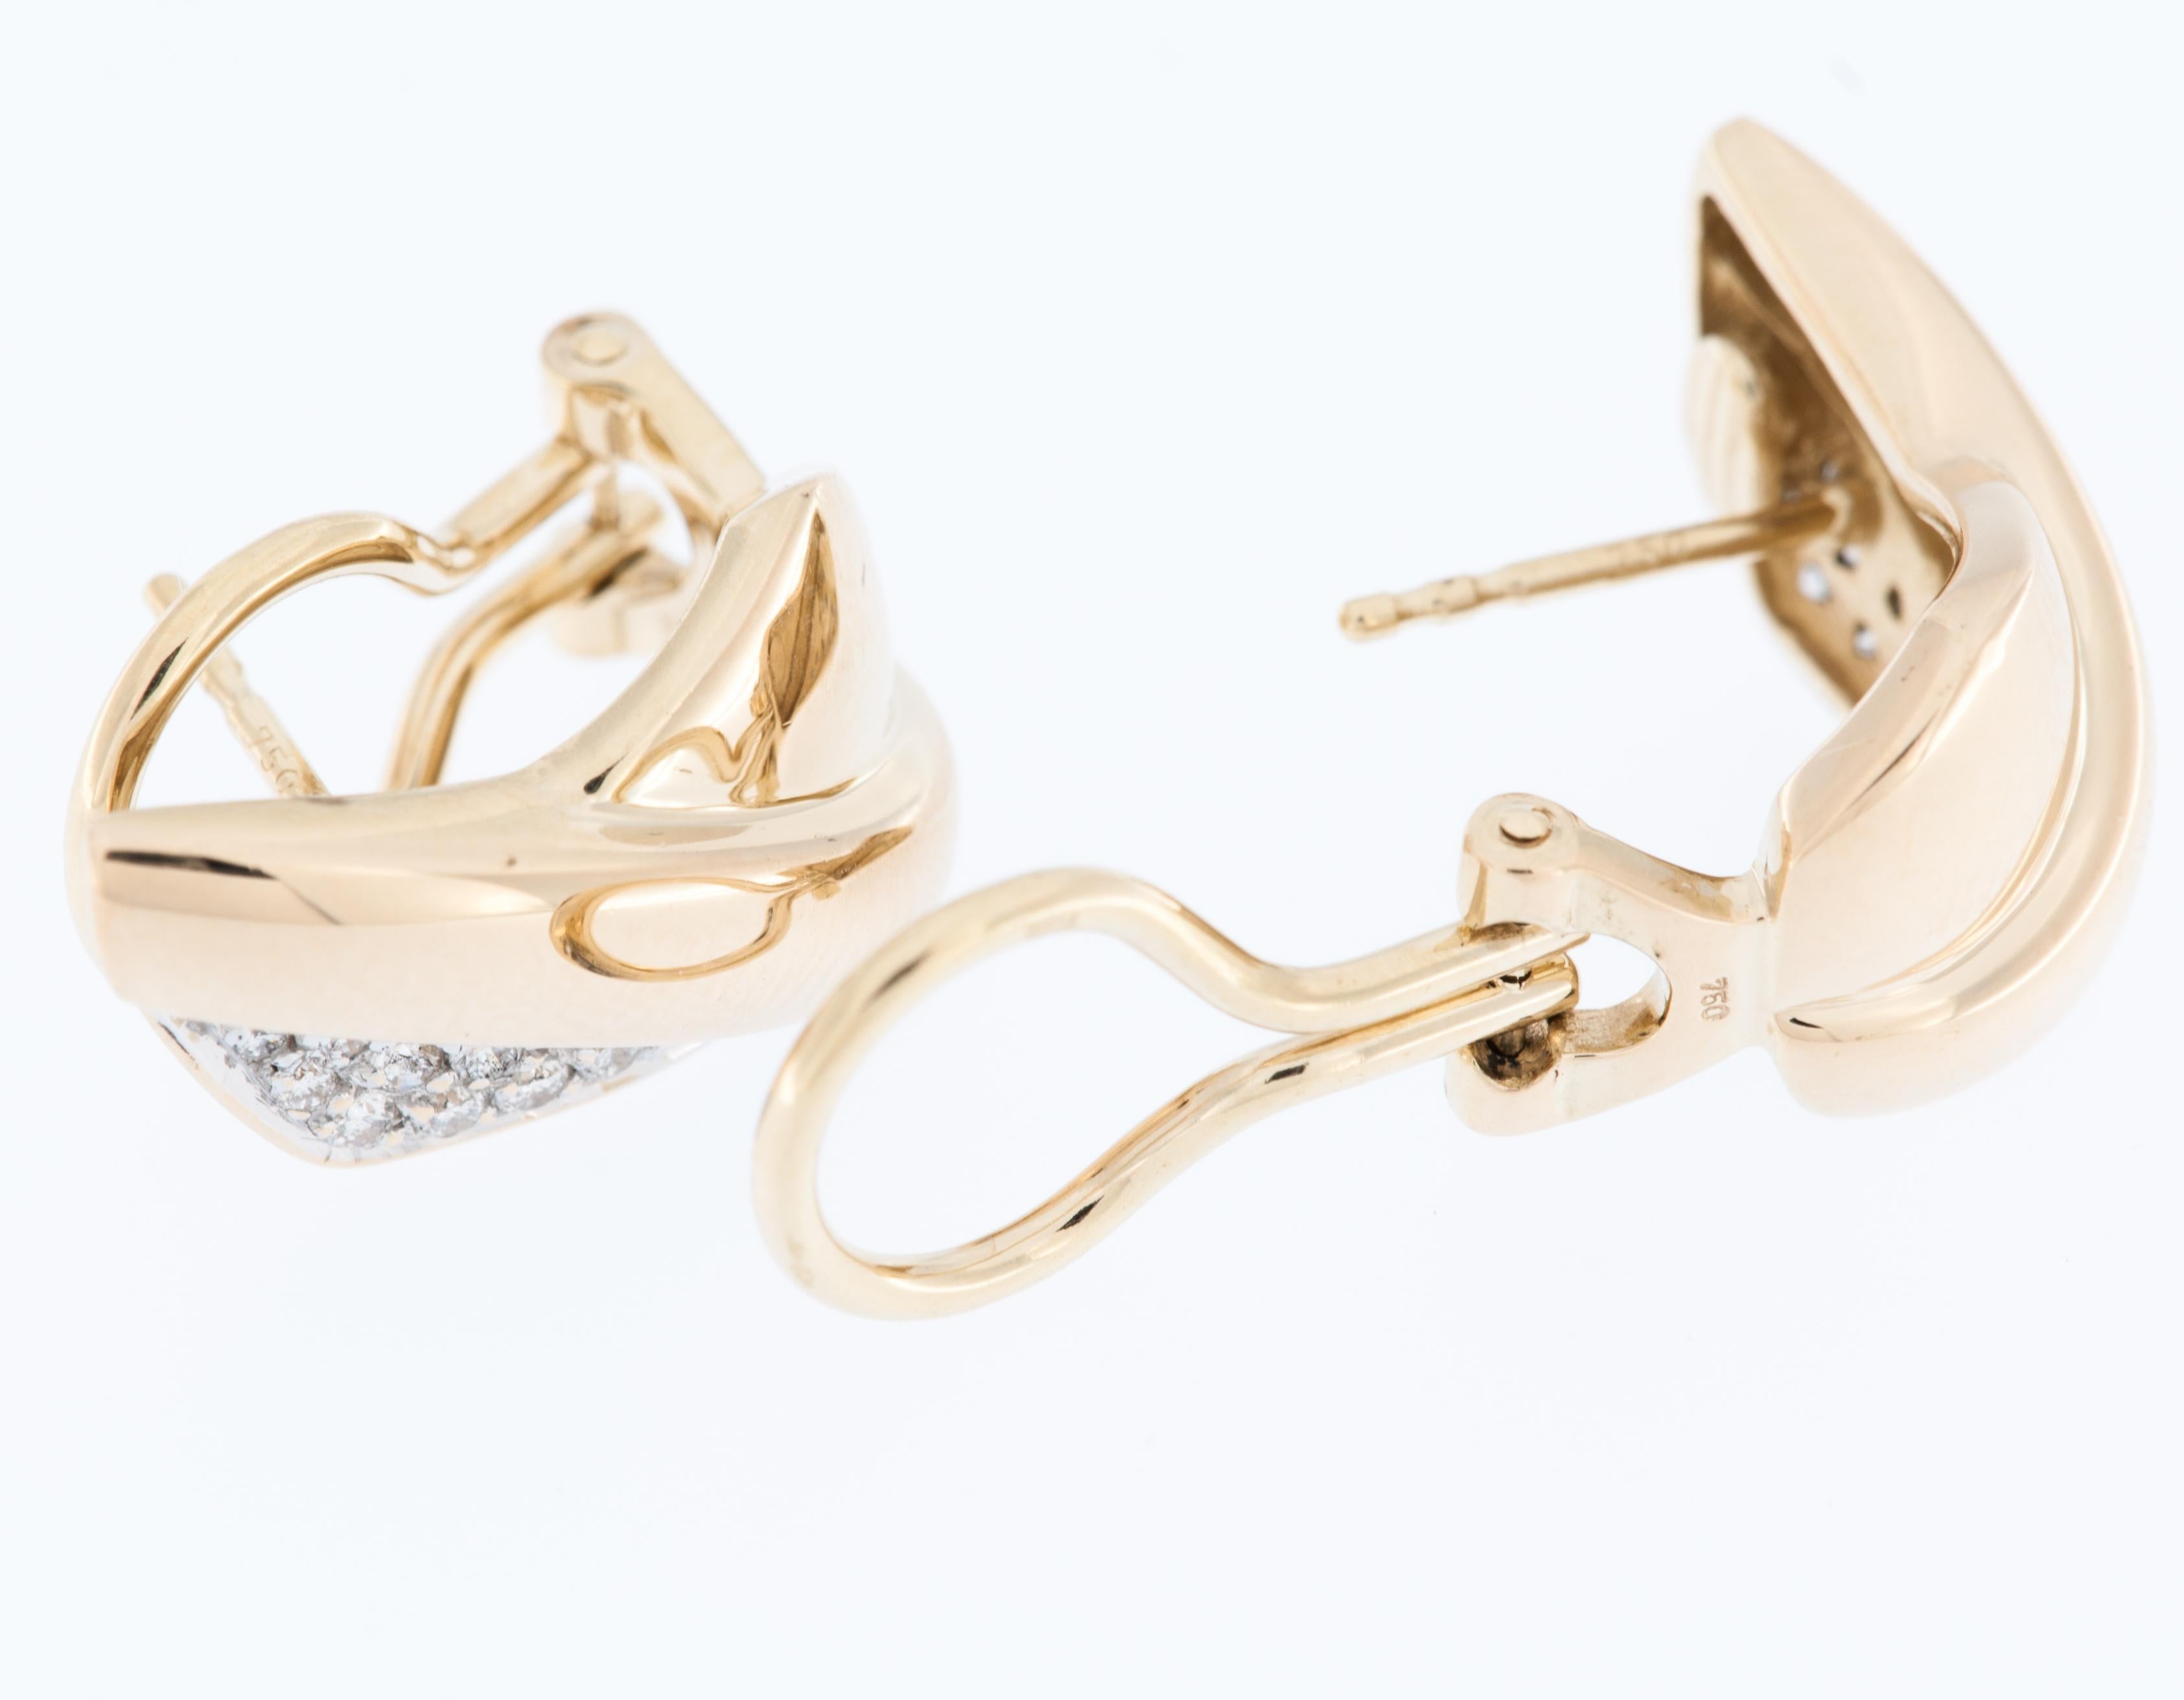 Die klassischen belgischen Ohrringe aus 18-karätigem Gold mit Diamanten, die aus einer Kombination von Gelb- und Weißgold bestehen, sind ein zeitloses und elegantes Accessoire. 

Die Ohrringe sind aus hochwertigem 18-karätigem Gold gefertigt und